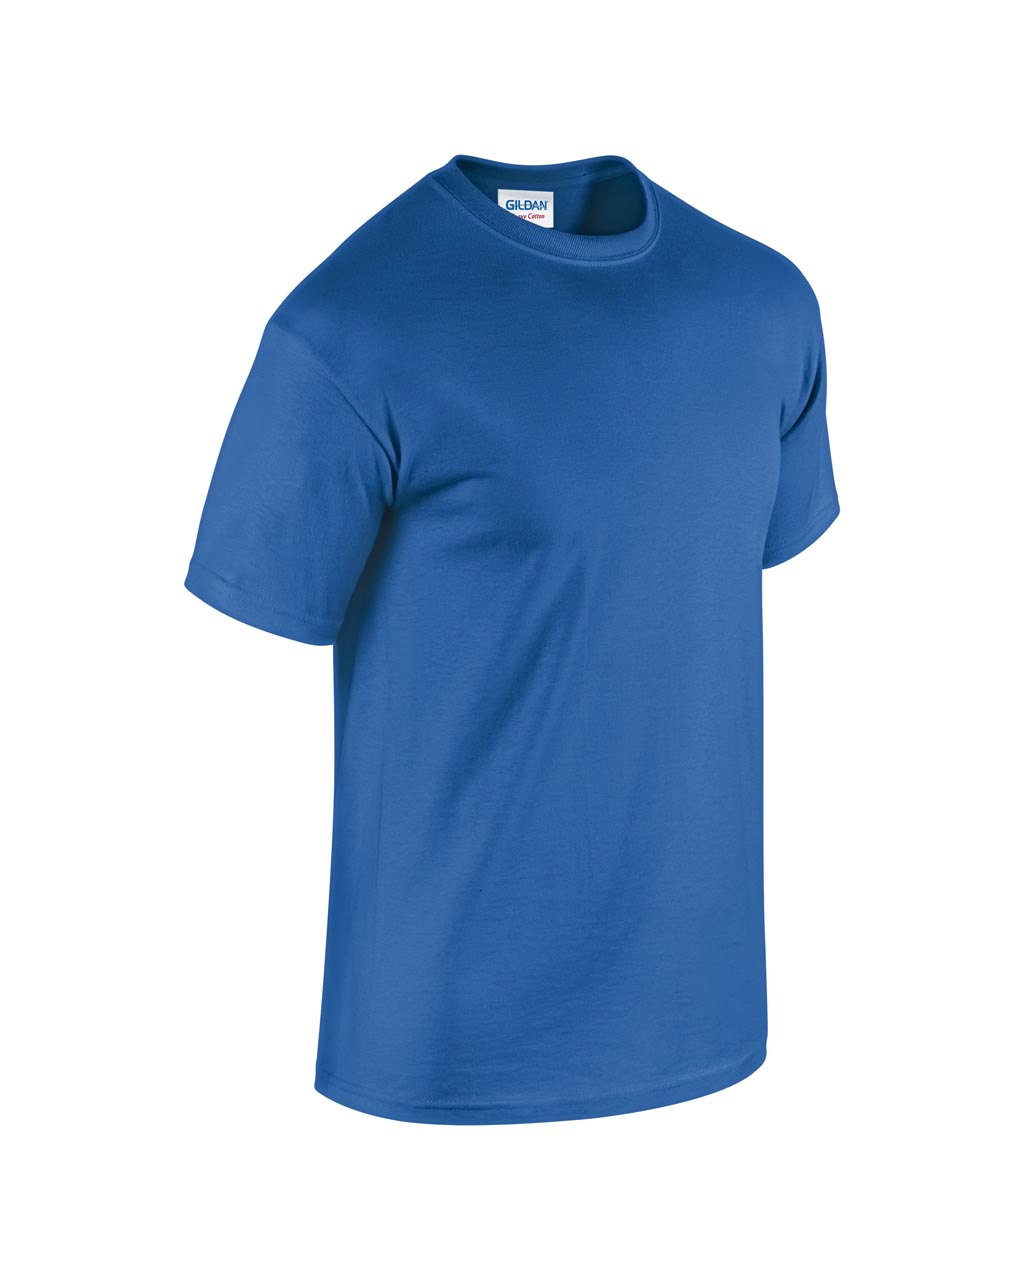 Gildan 5000 Royal Blue póló (100% pamut, kék)